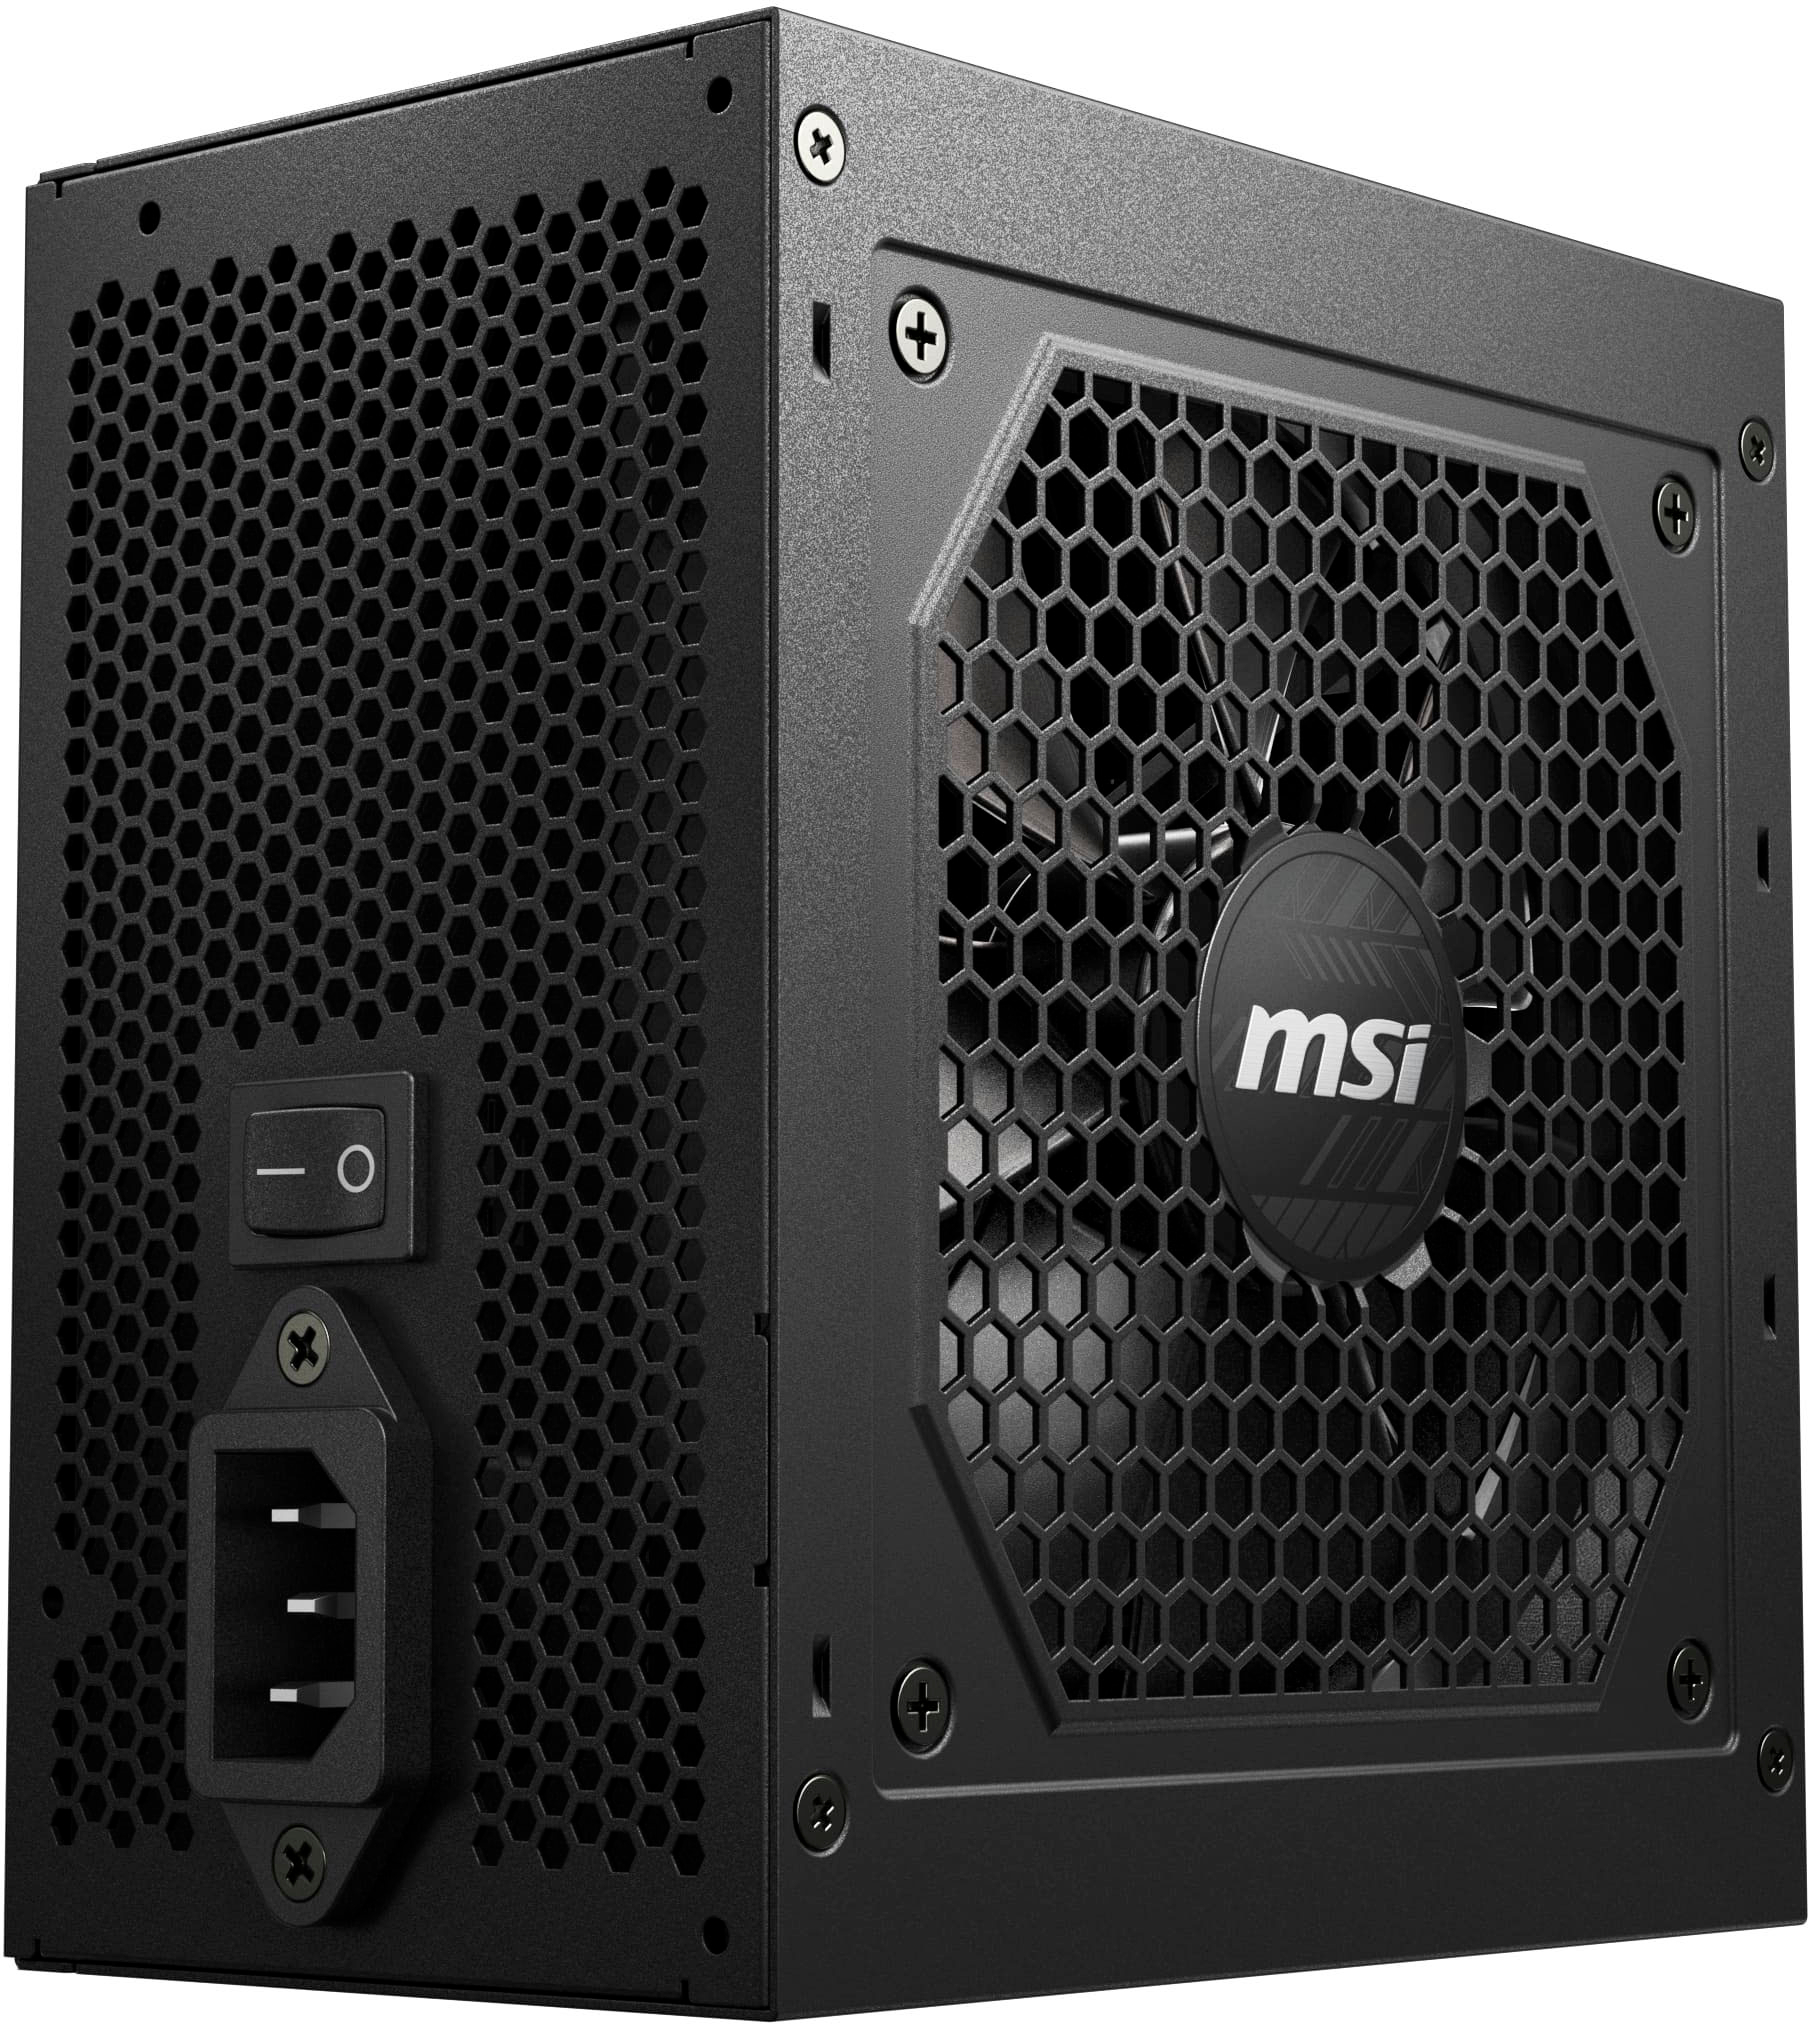 MSI MPG A850GF 850W Power Supply - Black